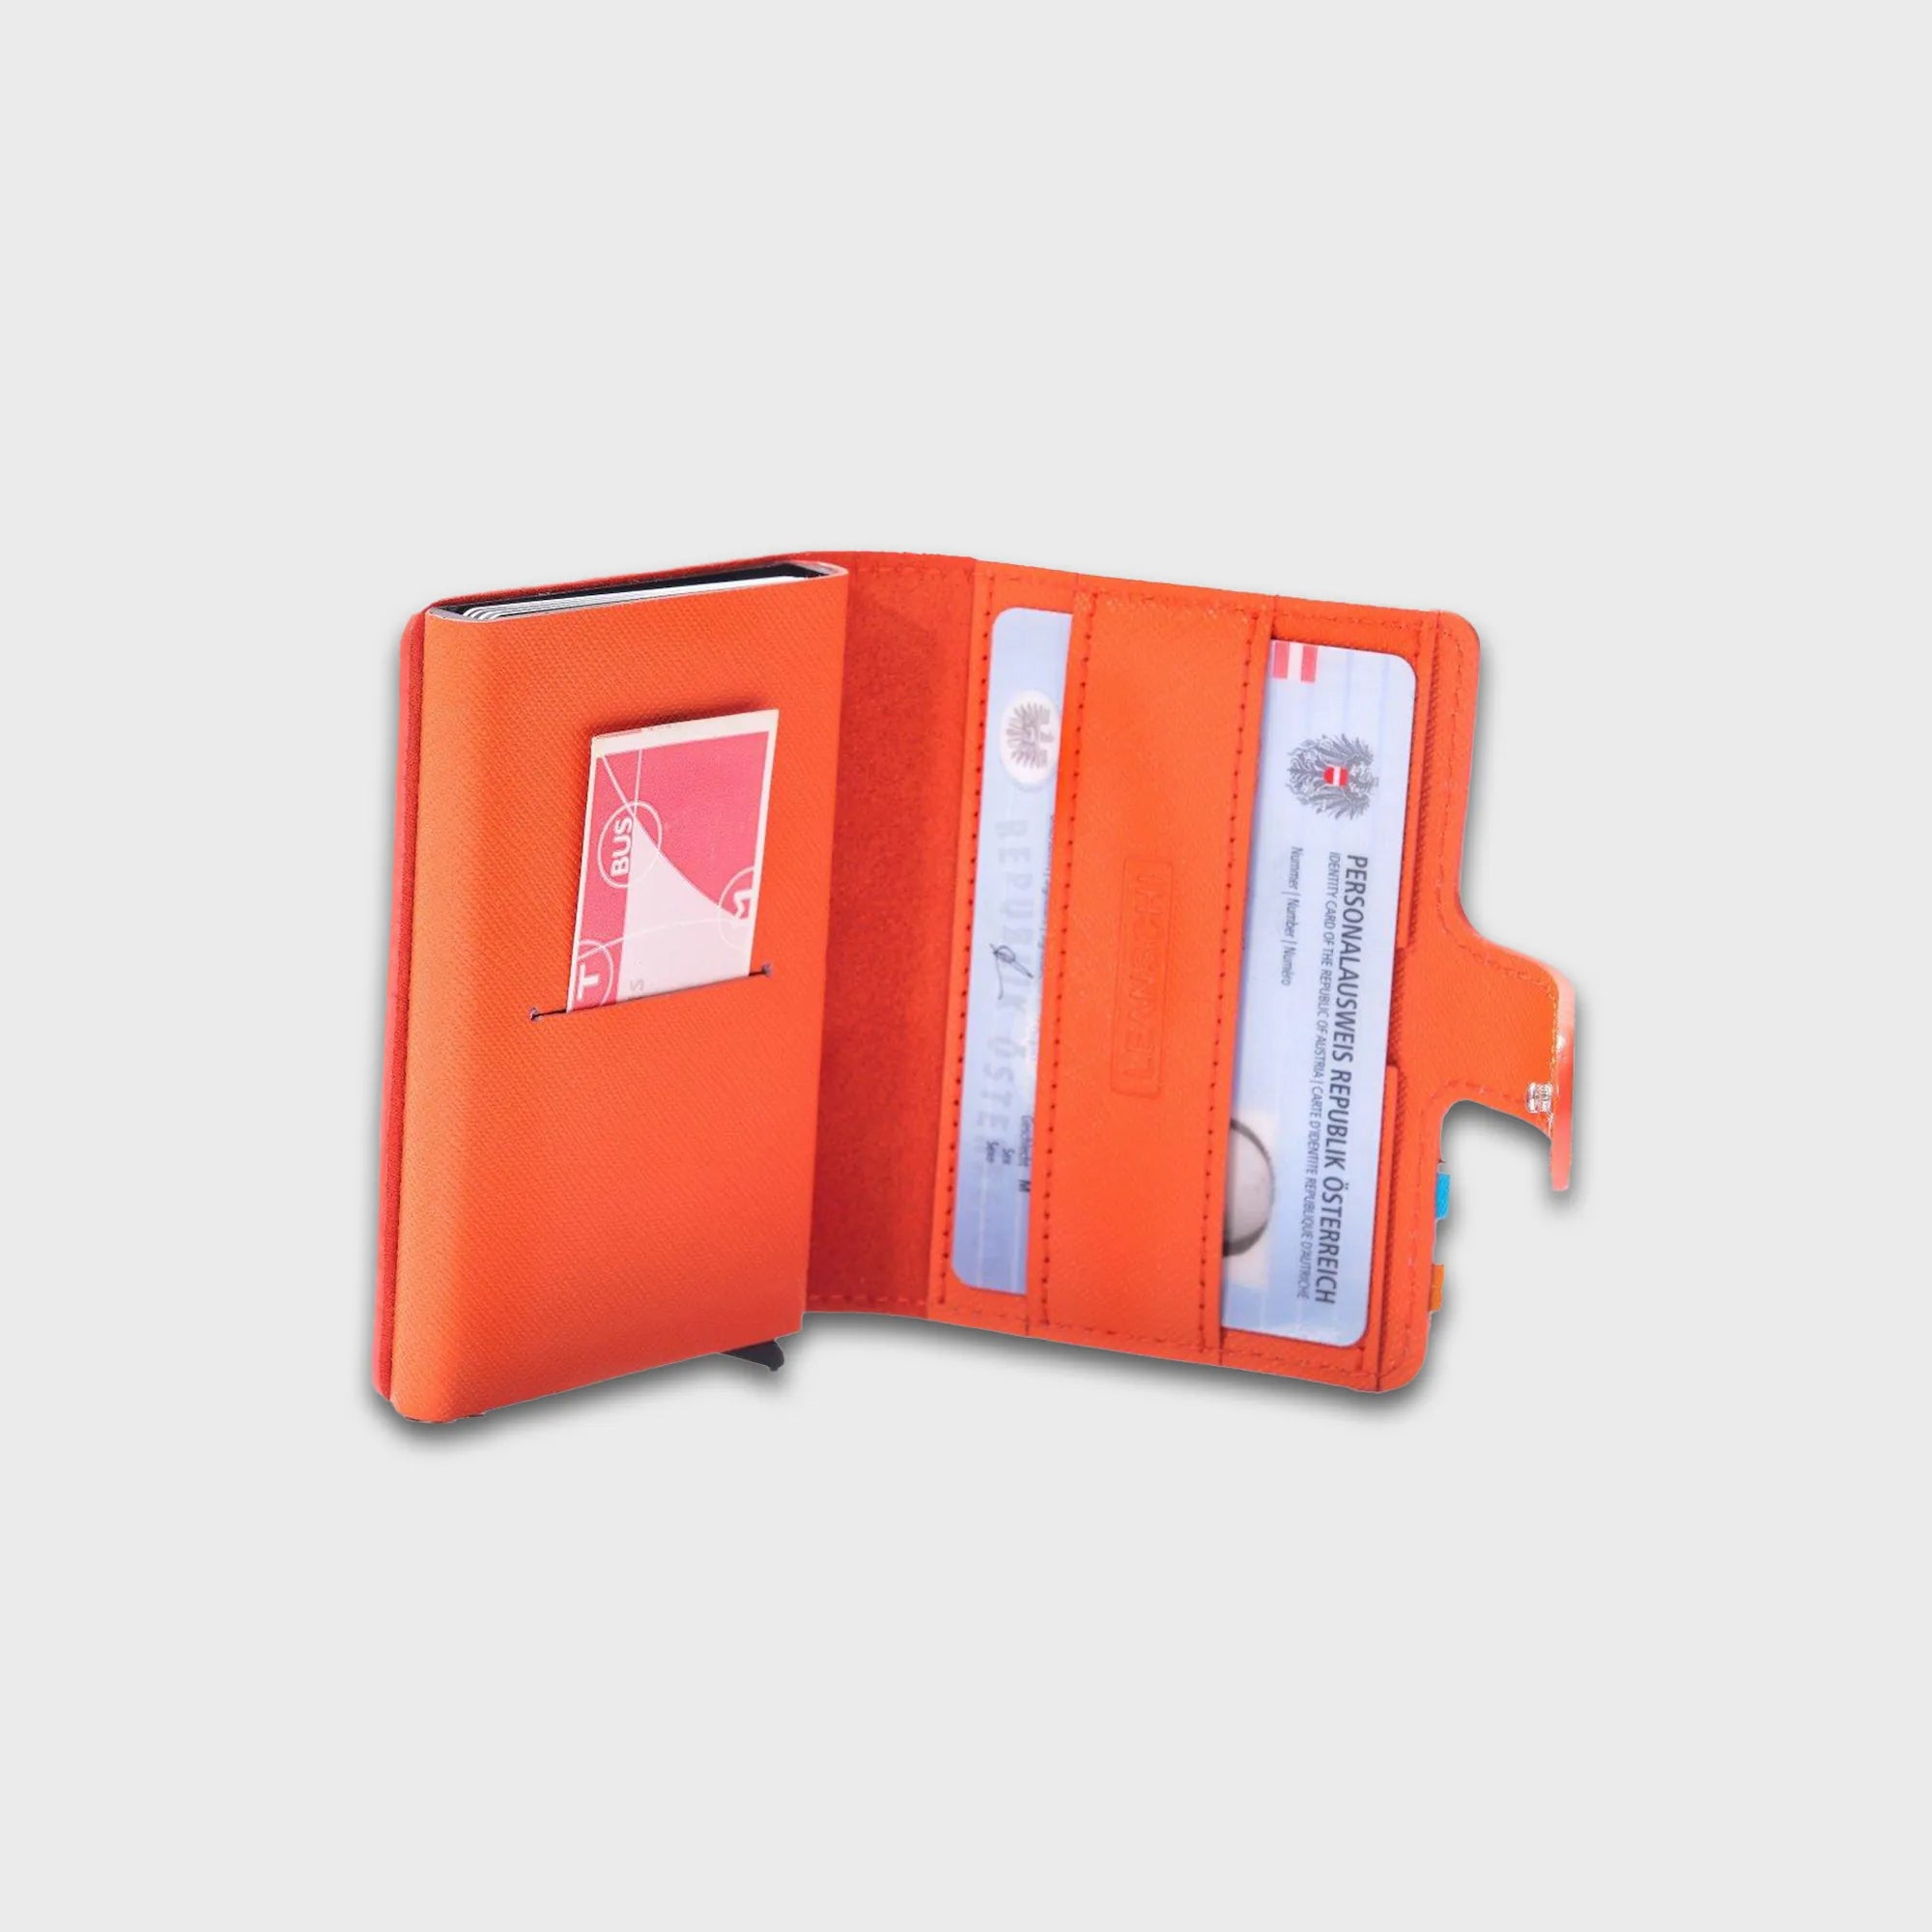 Innenansicht des aufgeklappten, orangen Tech-Wallets für Karten von Leanschi mit einem Personalausweis und einem Bus-Ticket in den vorgesehenen Fächern